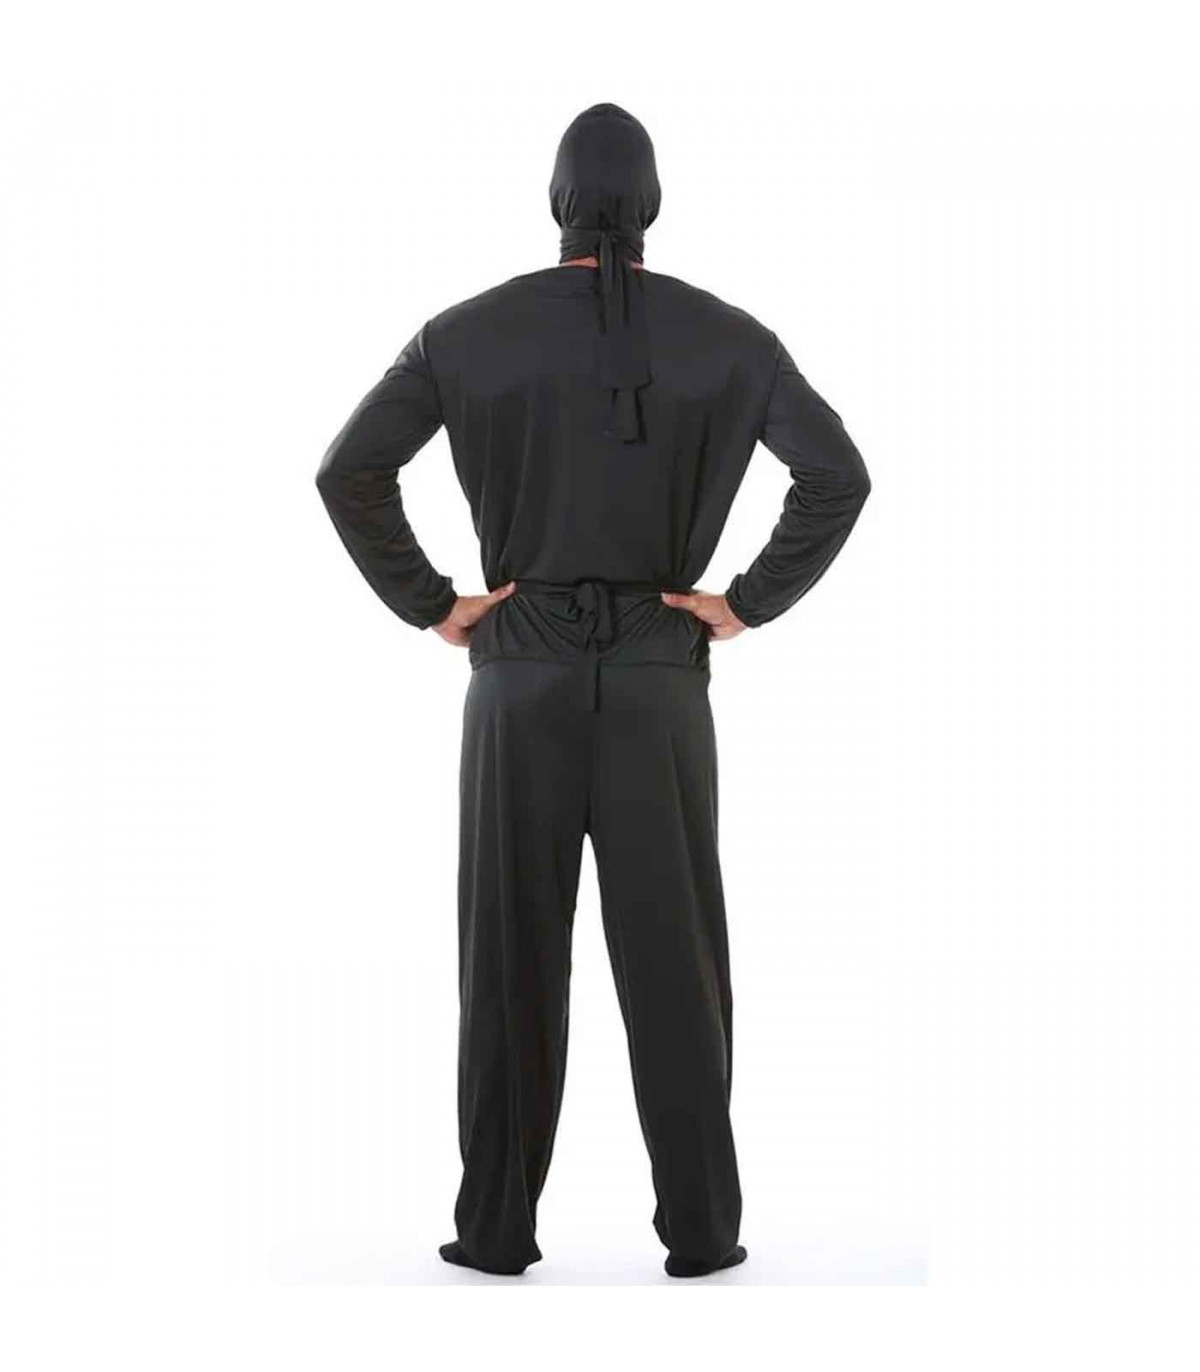 Disfraz de Ninja clásico negro para hombre